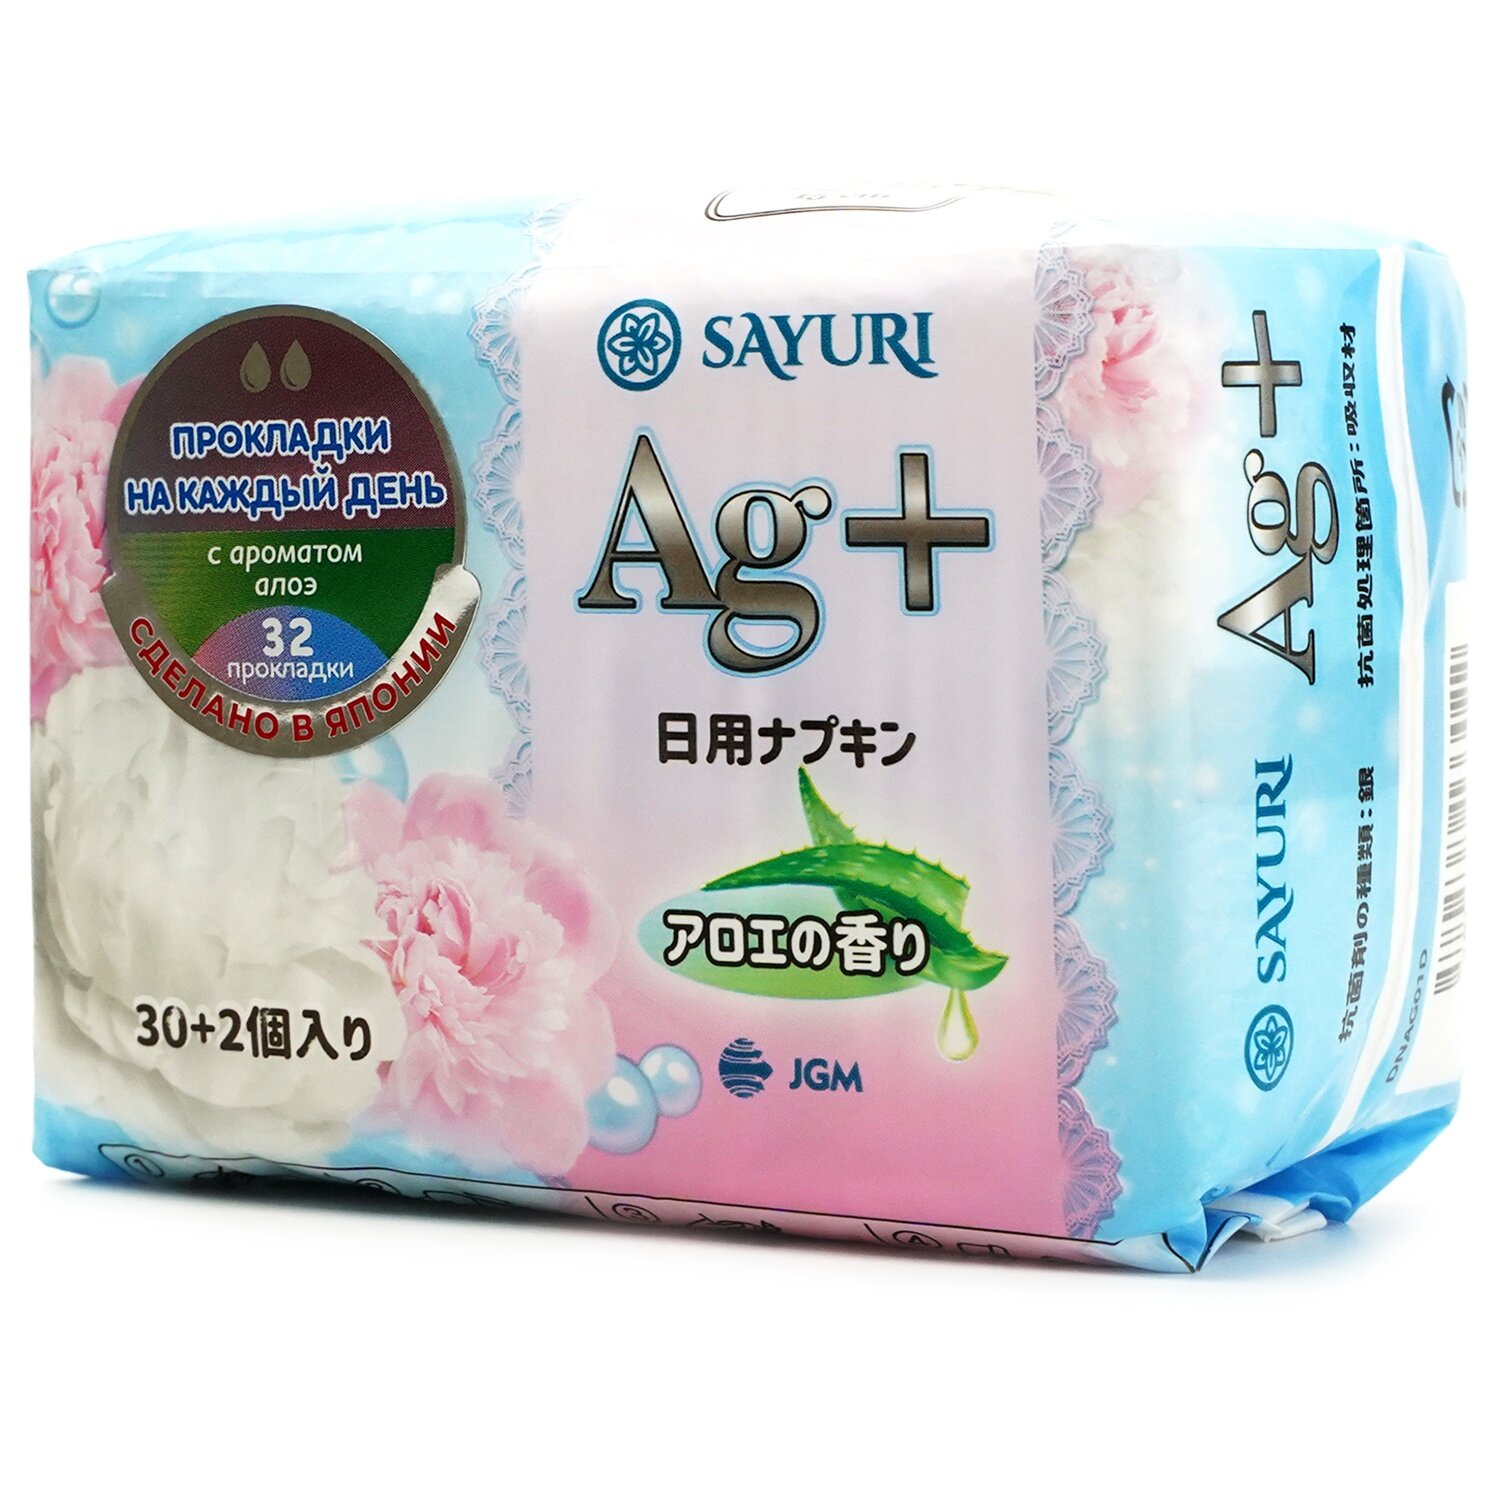 Прокладки гигиенические Sayuri Ежедневные, с ароматом алоэ, Argentum+, 15 см, 32 шт